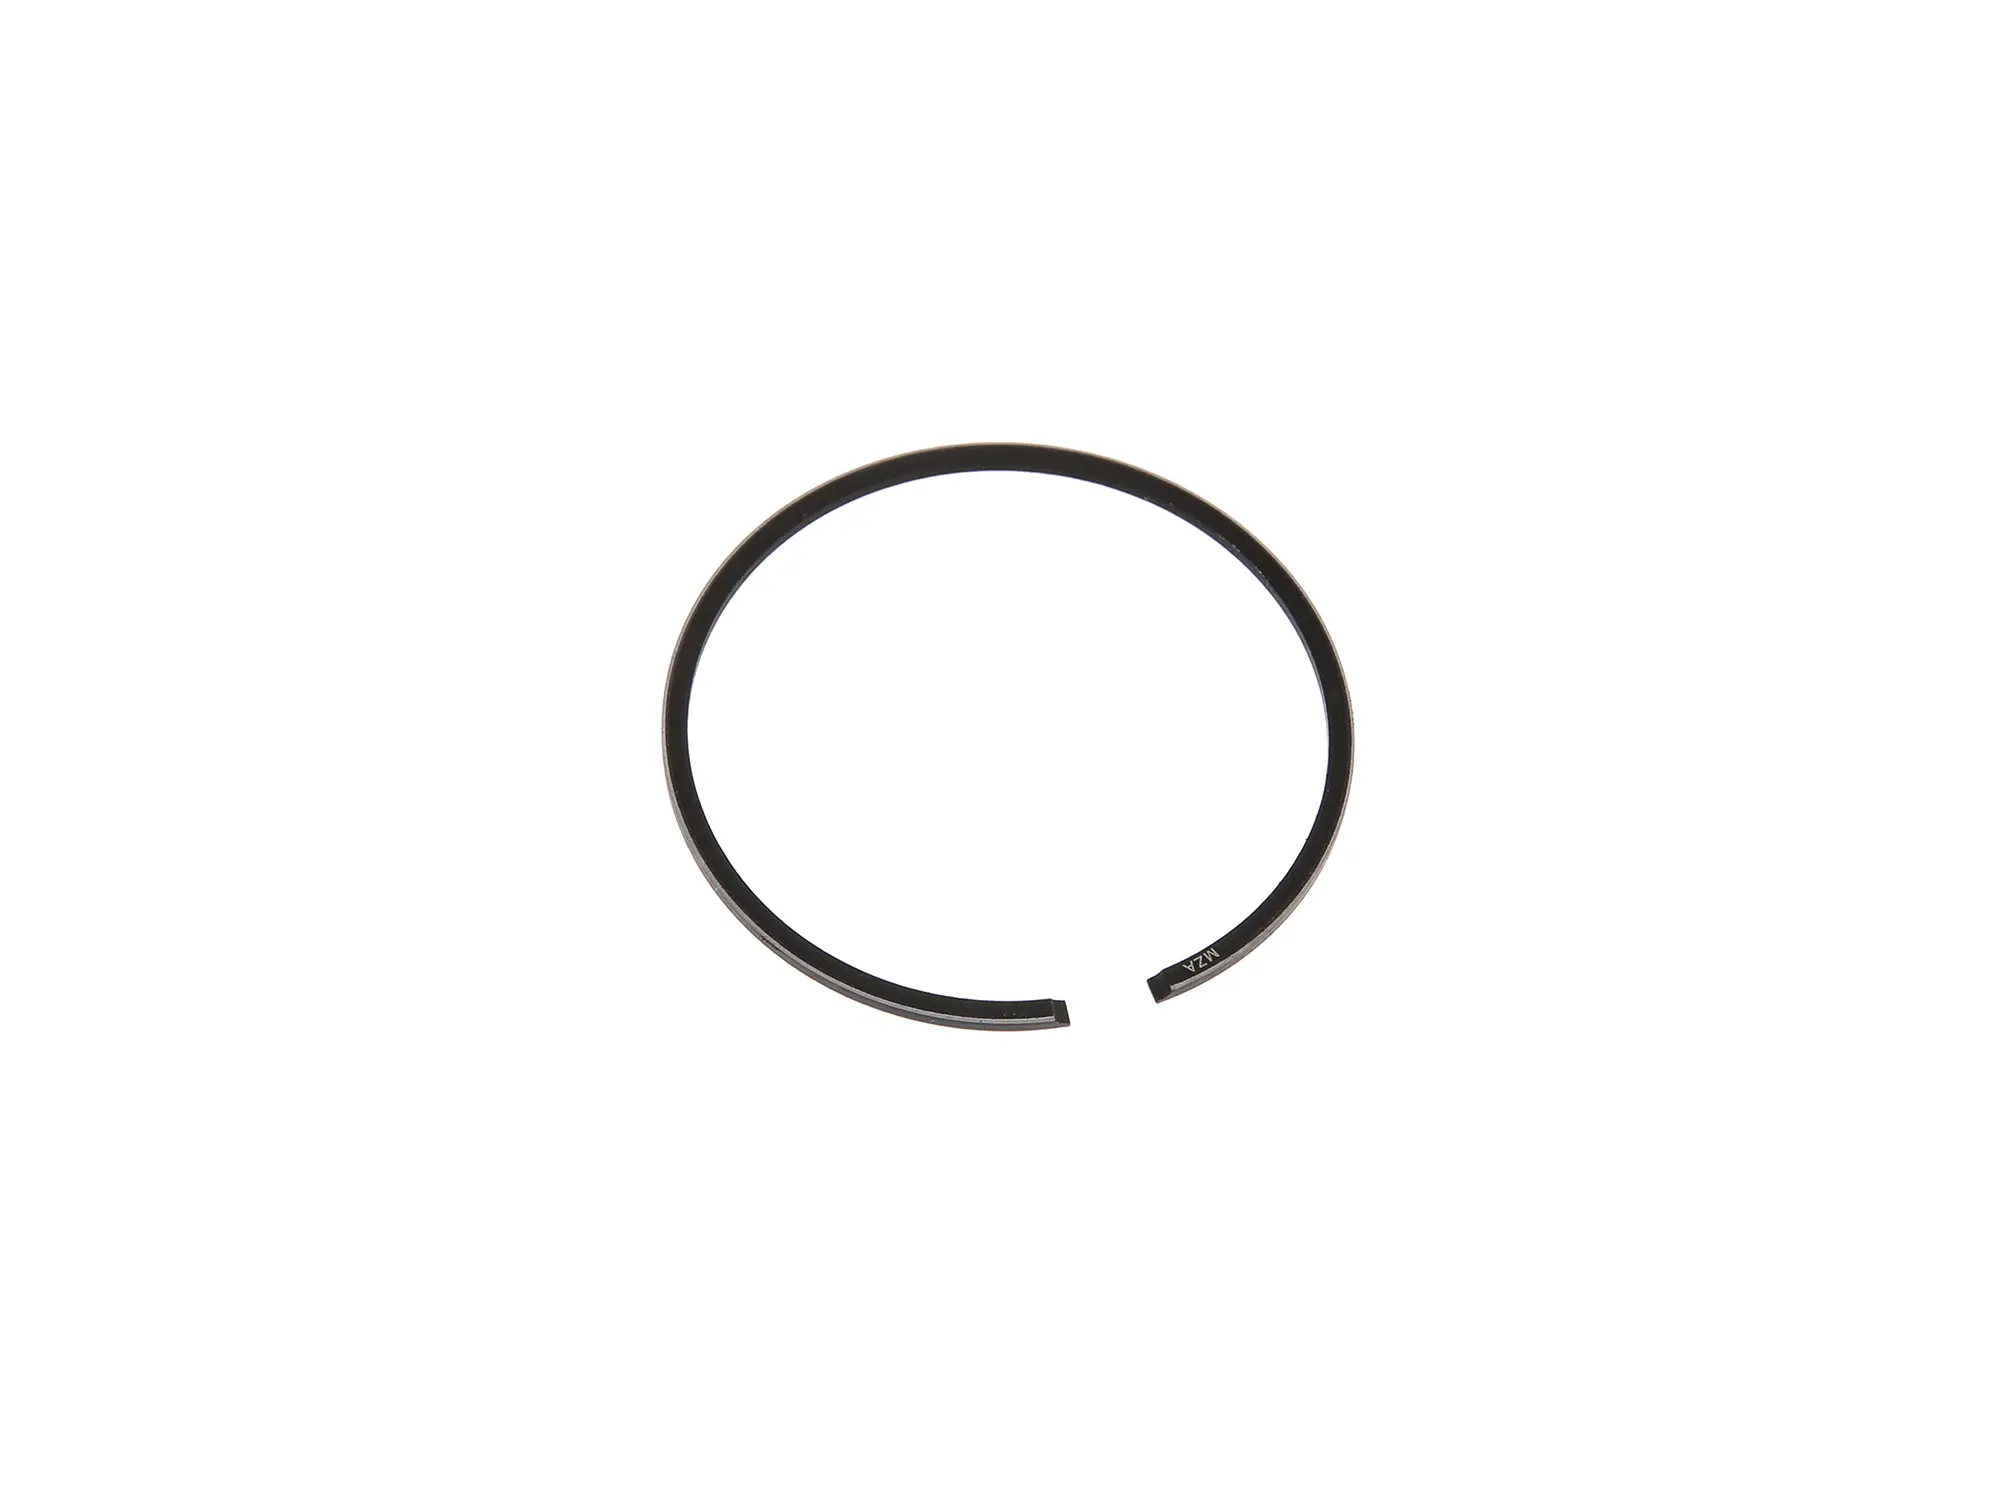 Kolbenring Ø38,00 x 1,2 mm für 1-Ring-Tuningkolben - MZA, Art.-Nr.: 10039009 - Bild 1